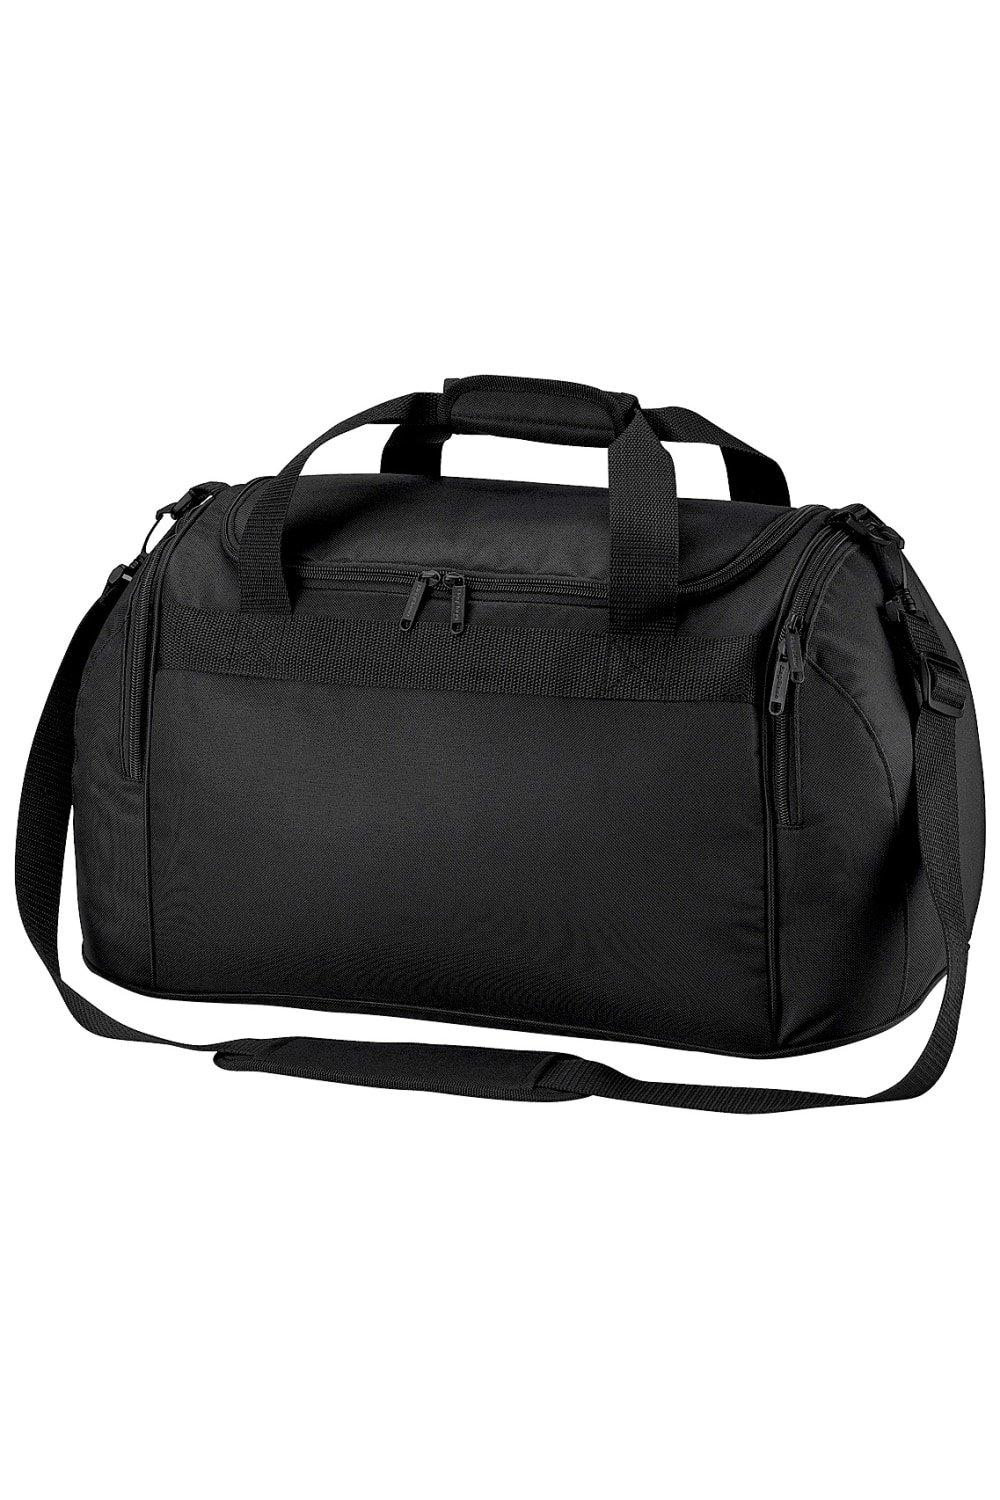 Дорожная сумка для фристайла/спортивная сумка (26 литров) Bagbase, черный пакет котики большой 38 5 x 28 x 15 см